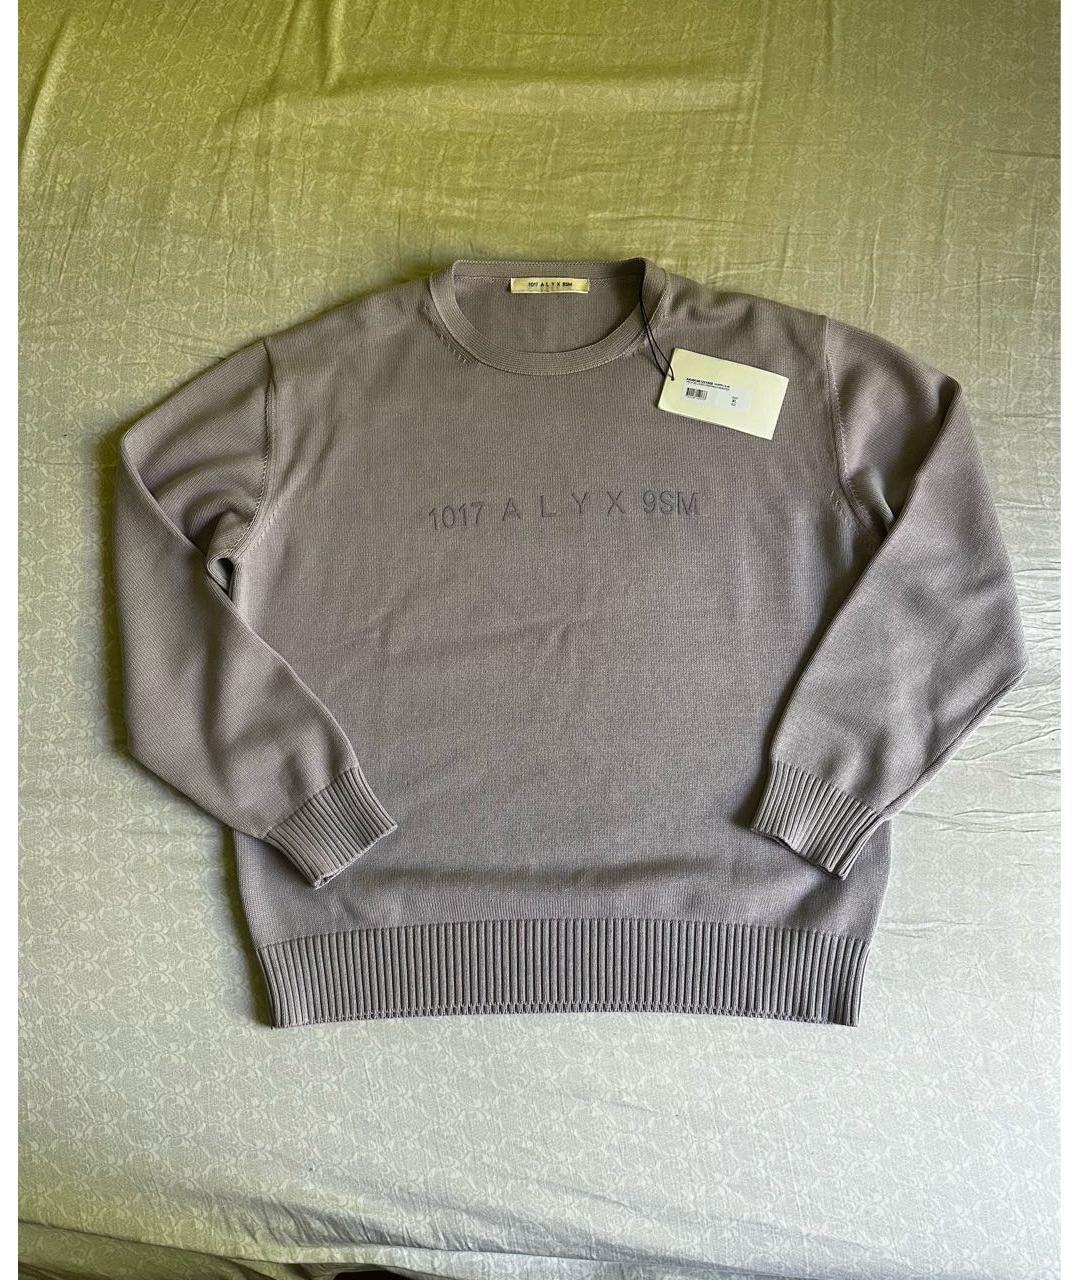 1017 ALYX 9SM Фиолетовый вискозный джемпер / свитер, фото 2